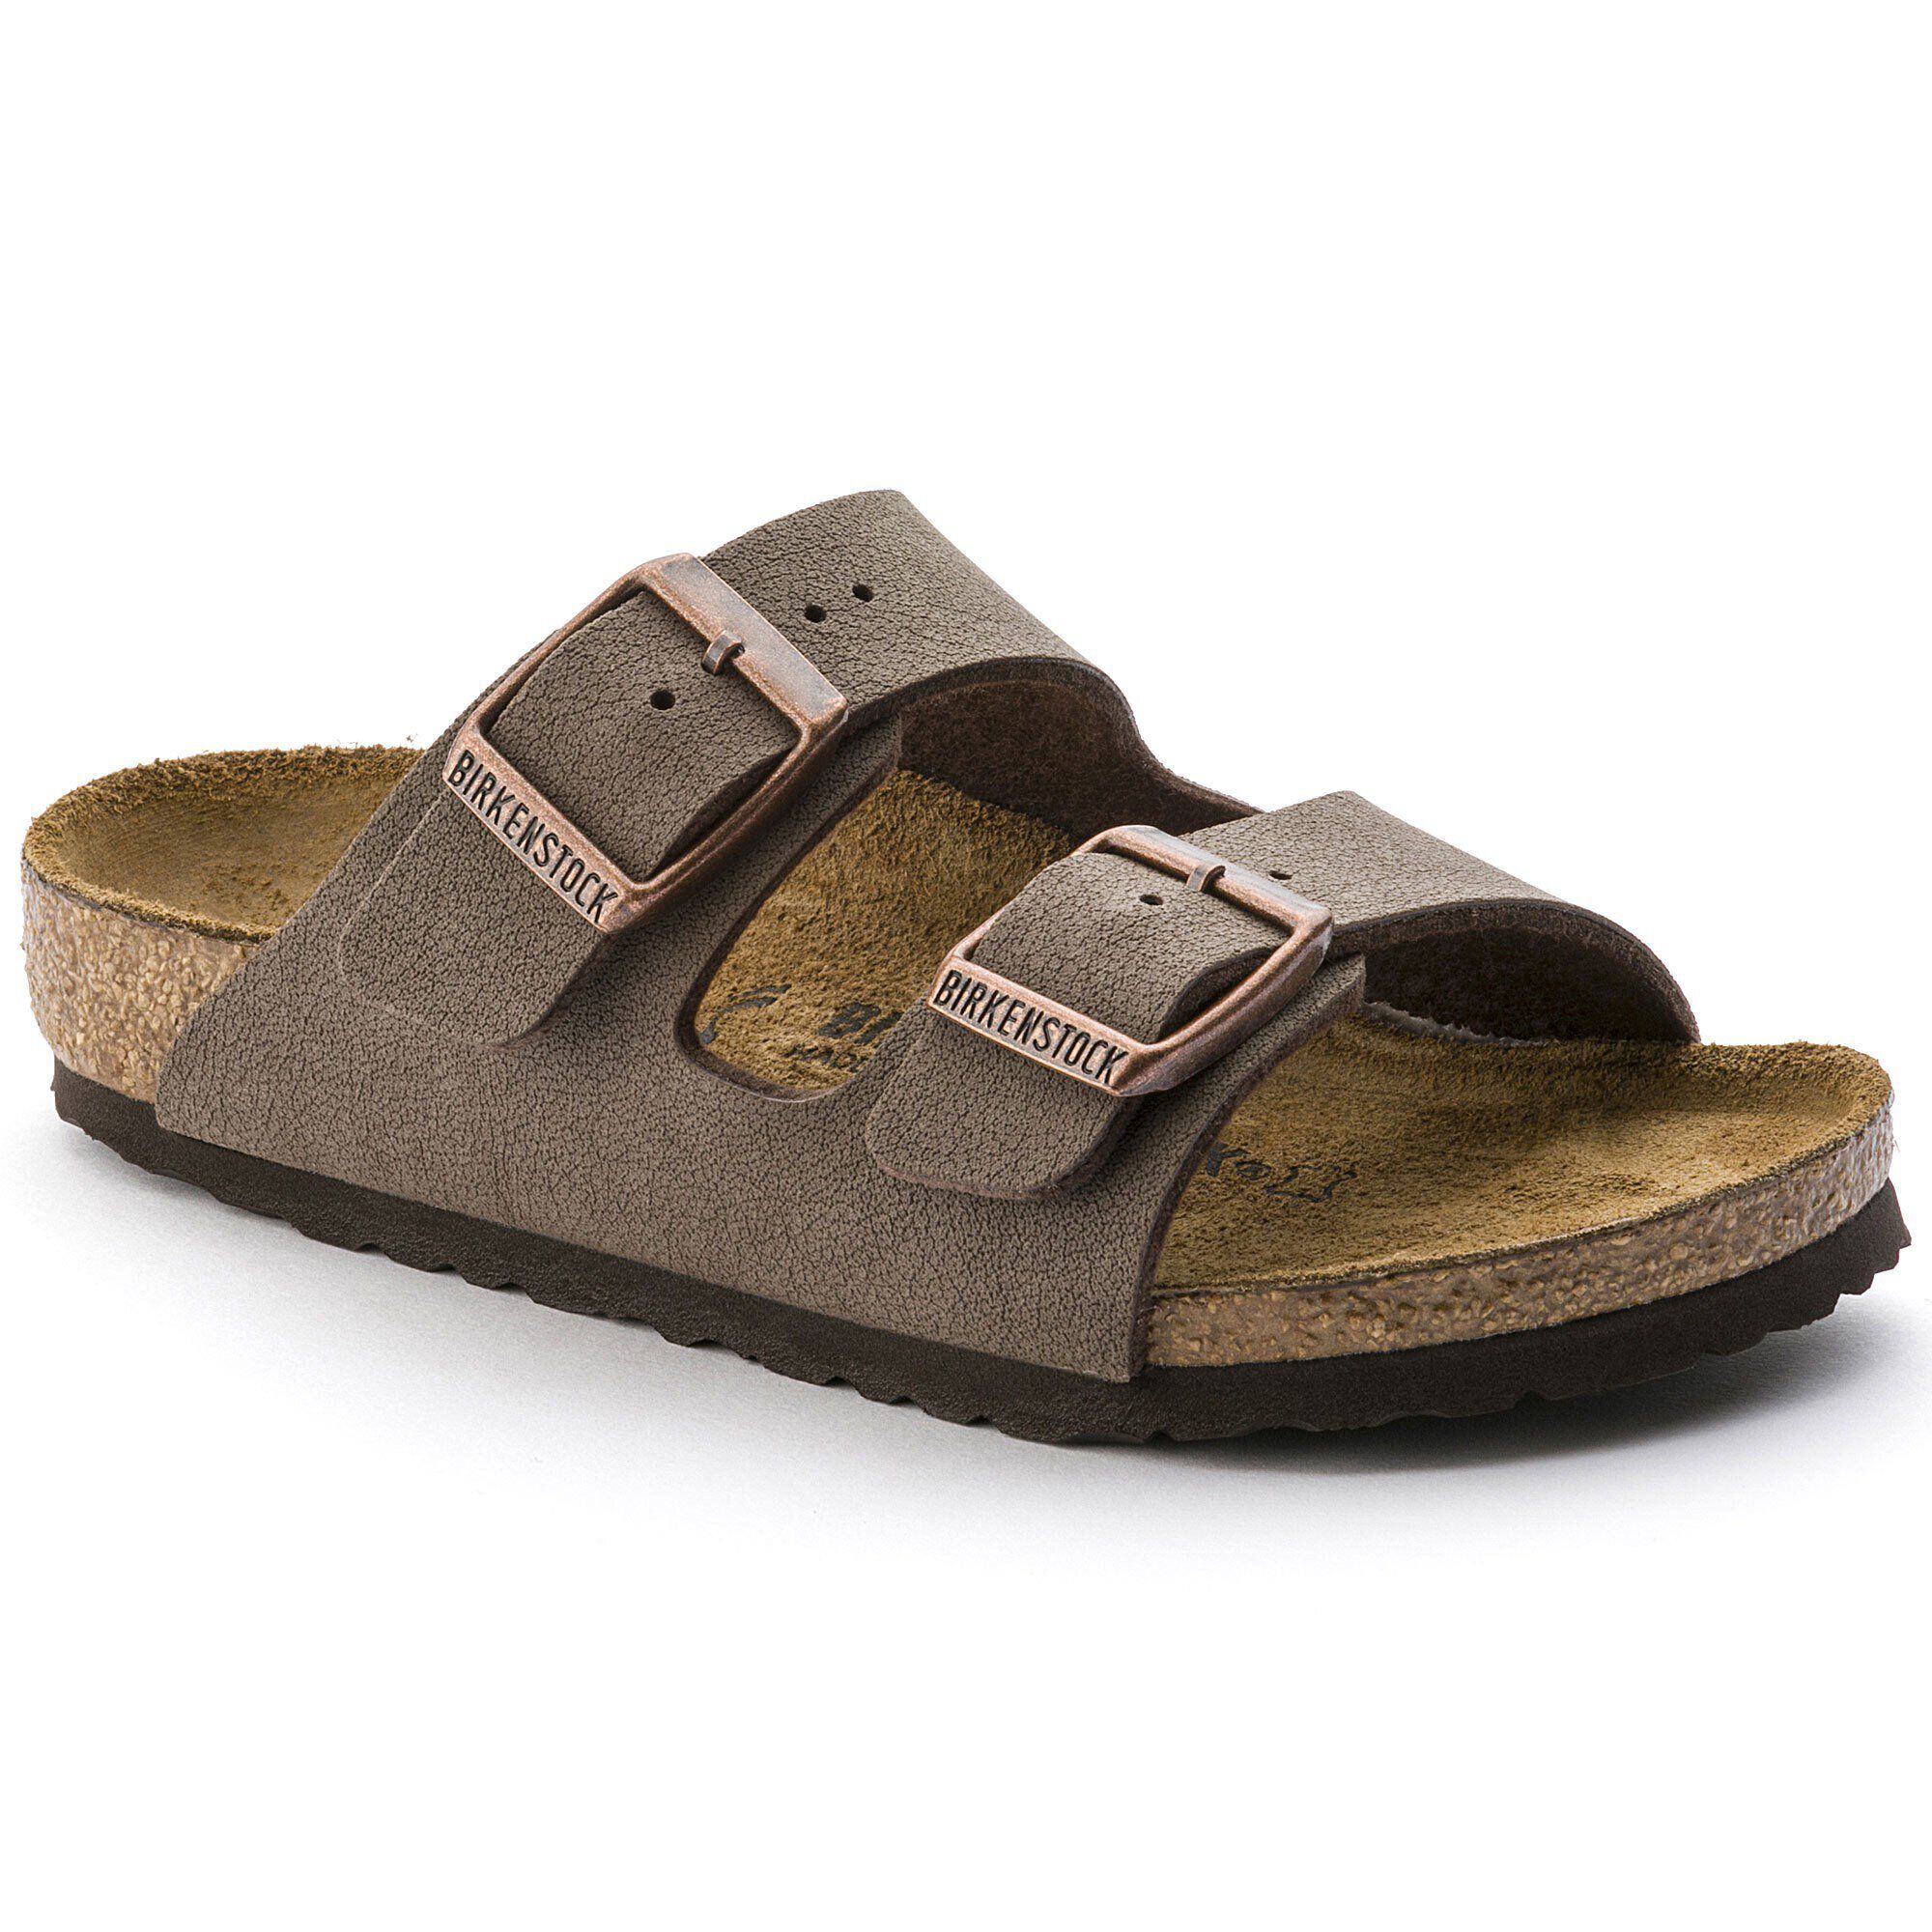 Kids sandals | shop online at BIRKENSTOCK